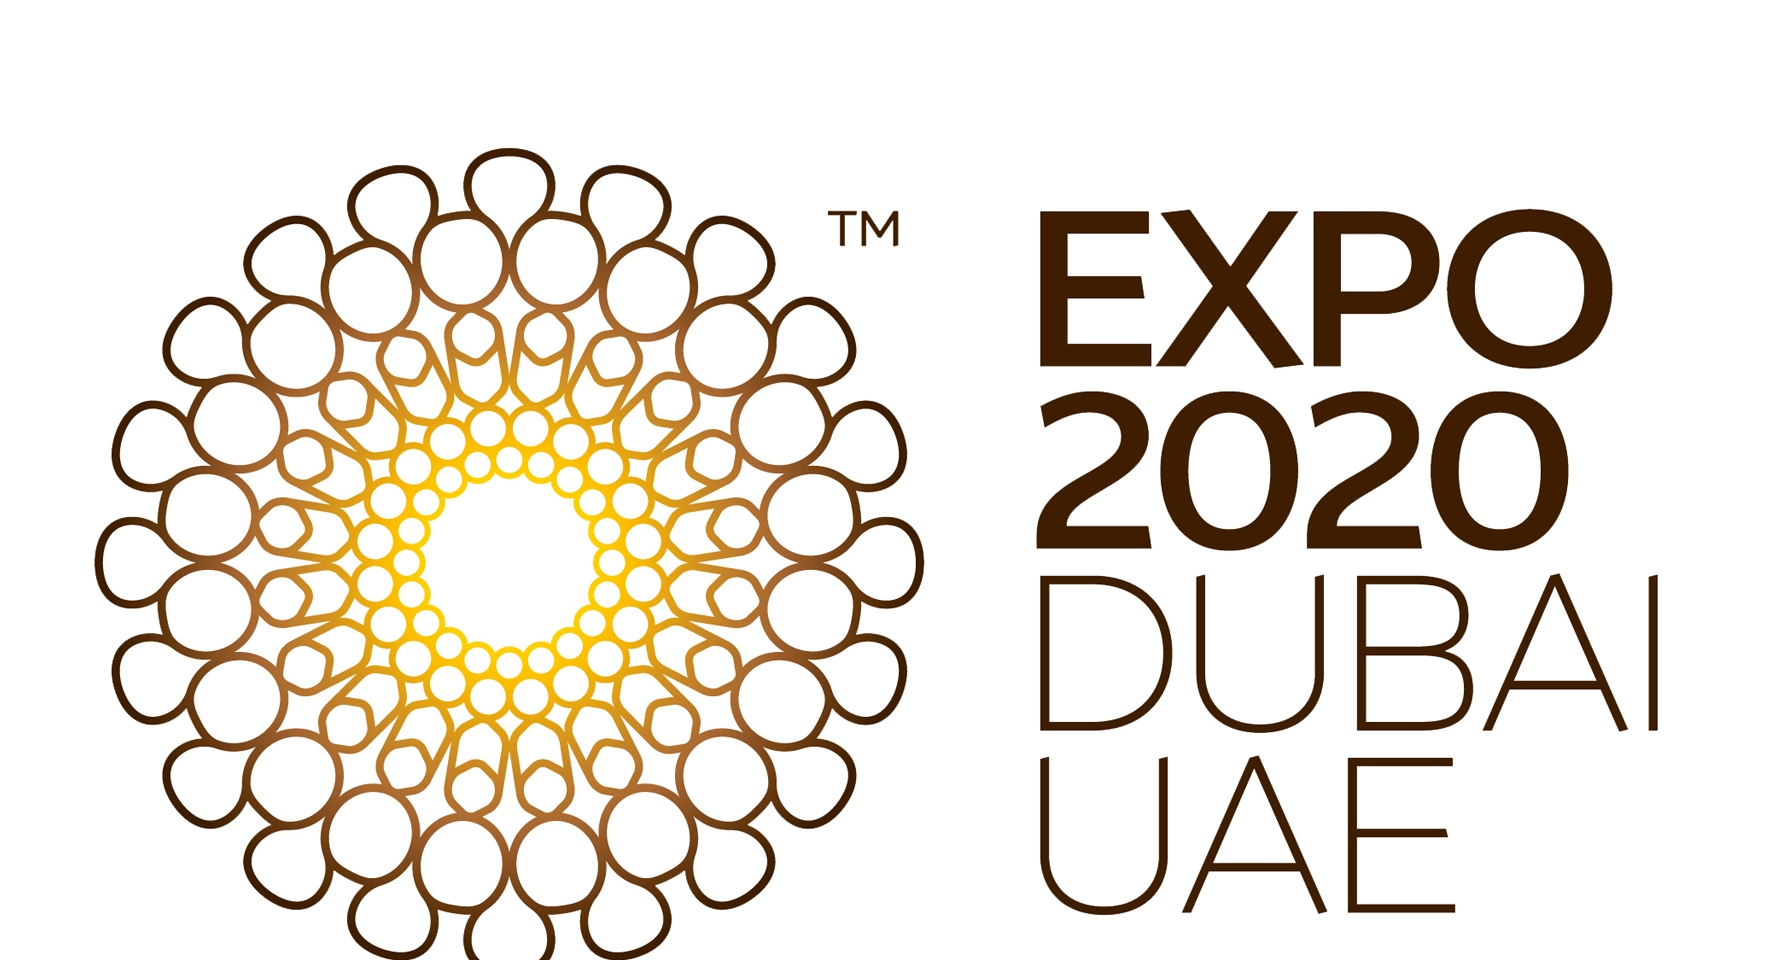 ATENÇÃO ARQUITETOS: INSCRIÇÕES ABERTAS PARA SELEÇÃO DO PROJETO PARA A EXPO DUBAI 2020